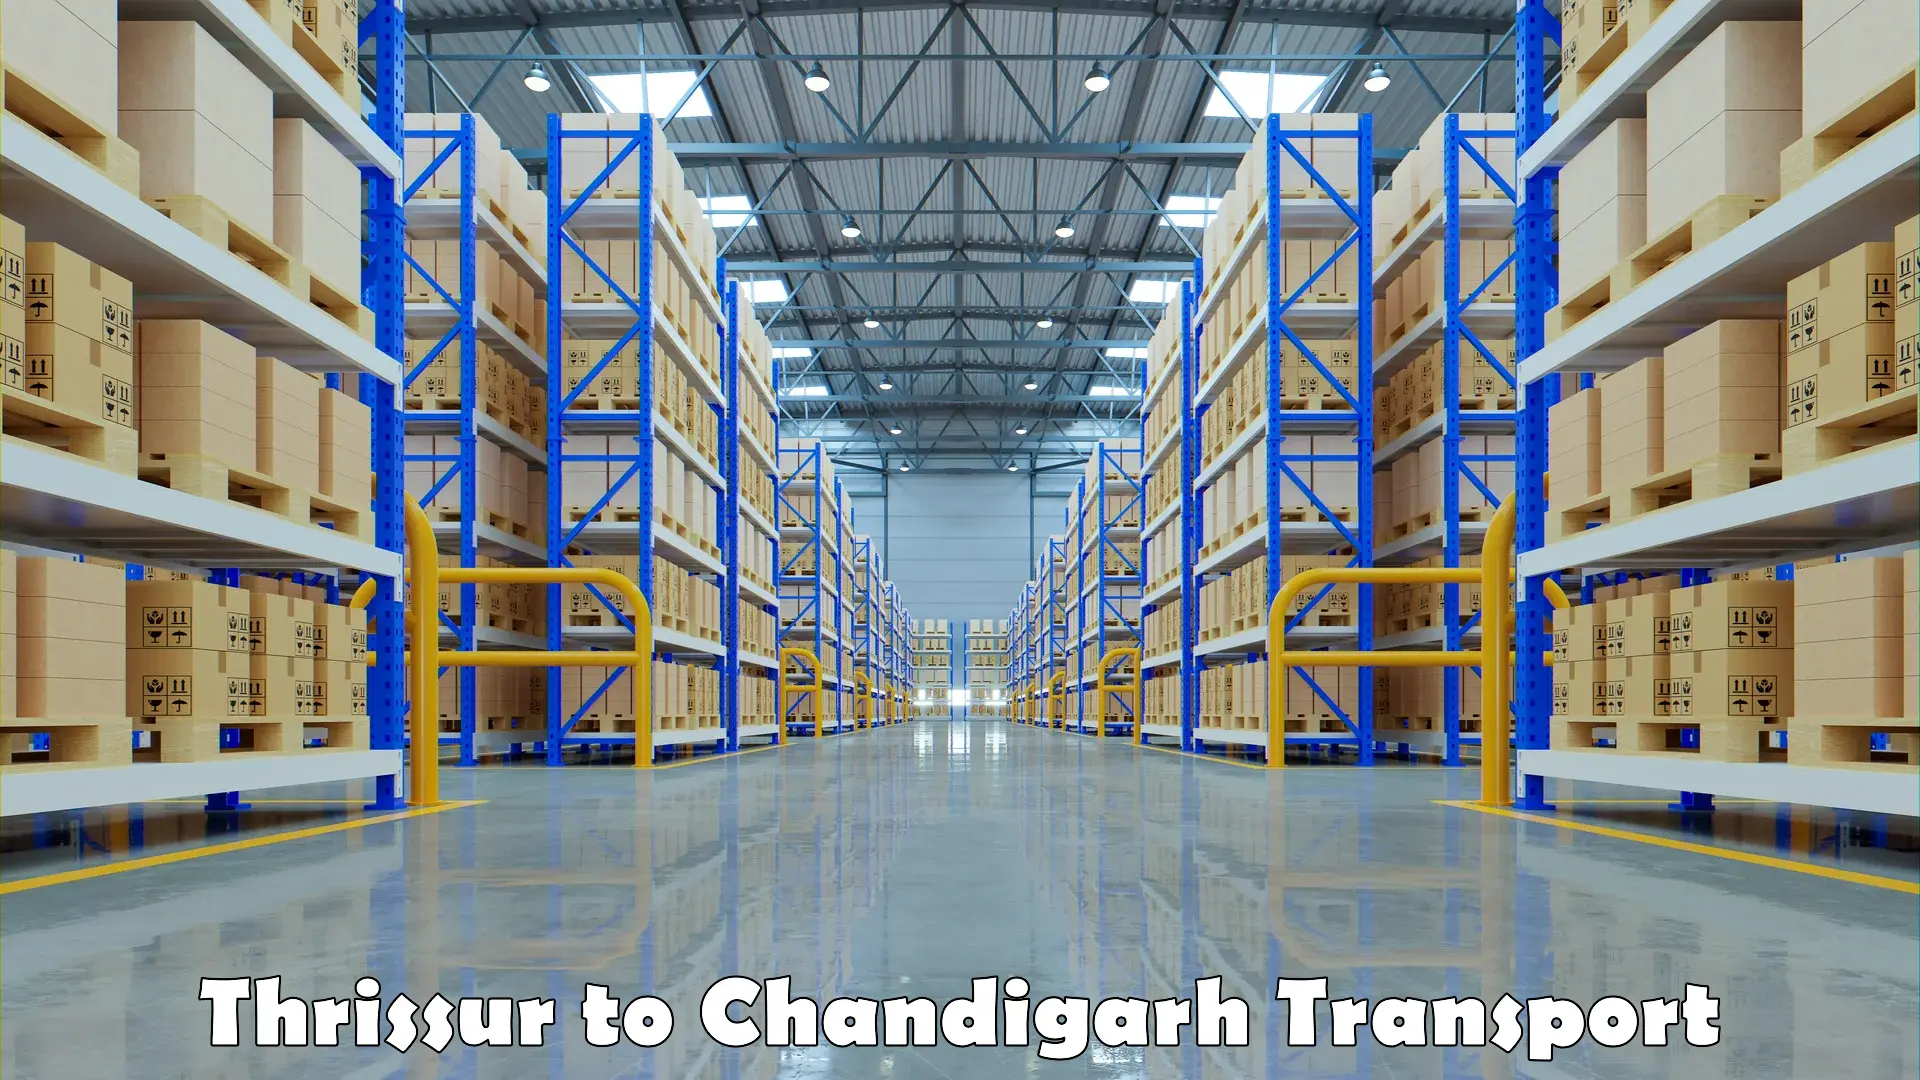 Express transport services Thrissur to Chandigarh